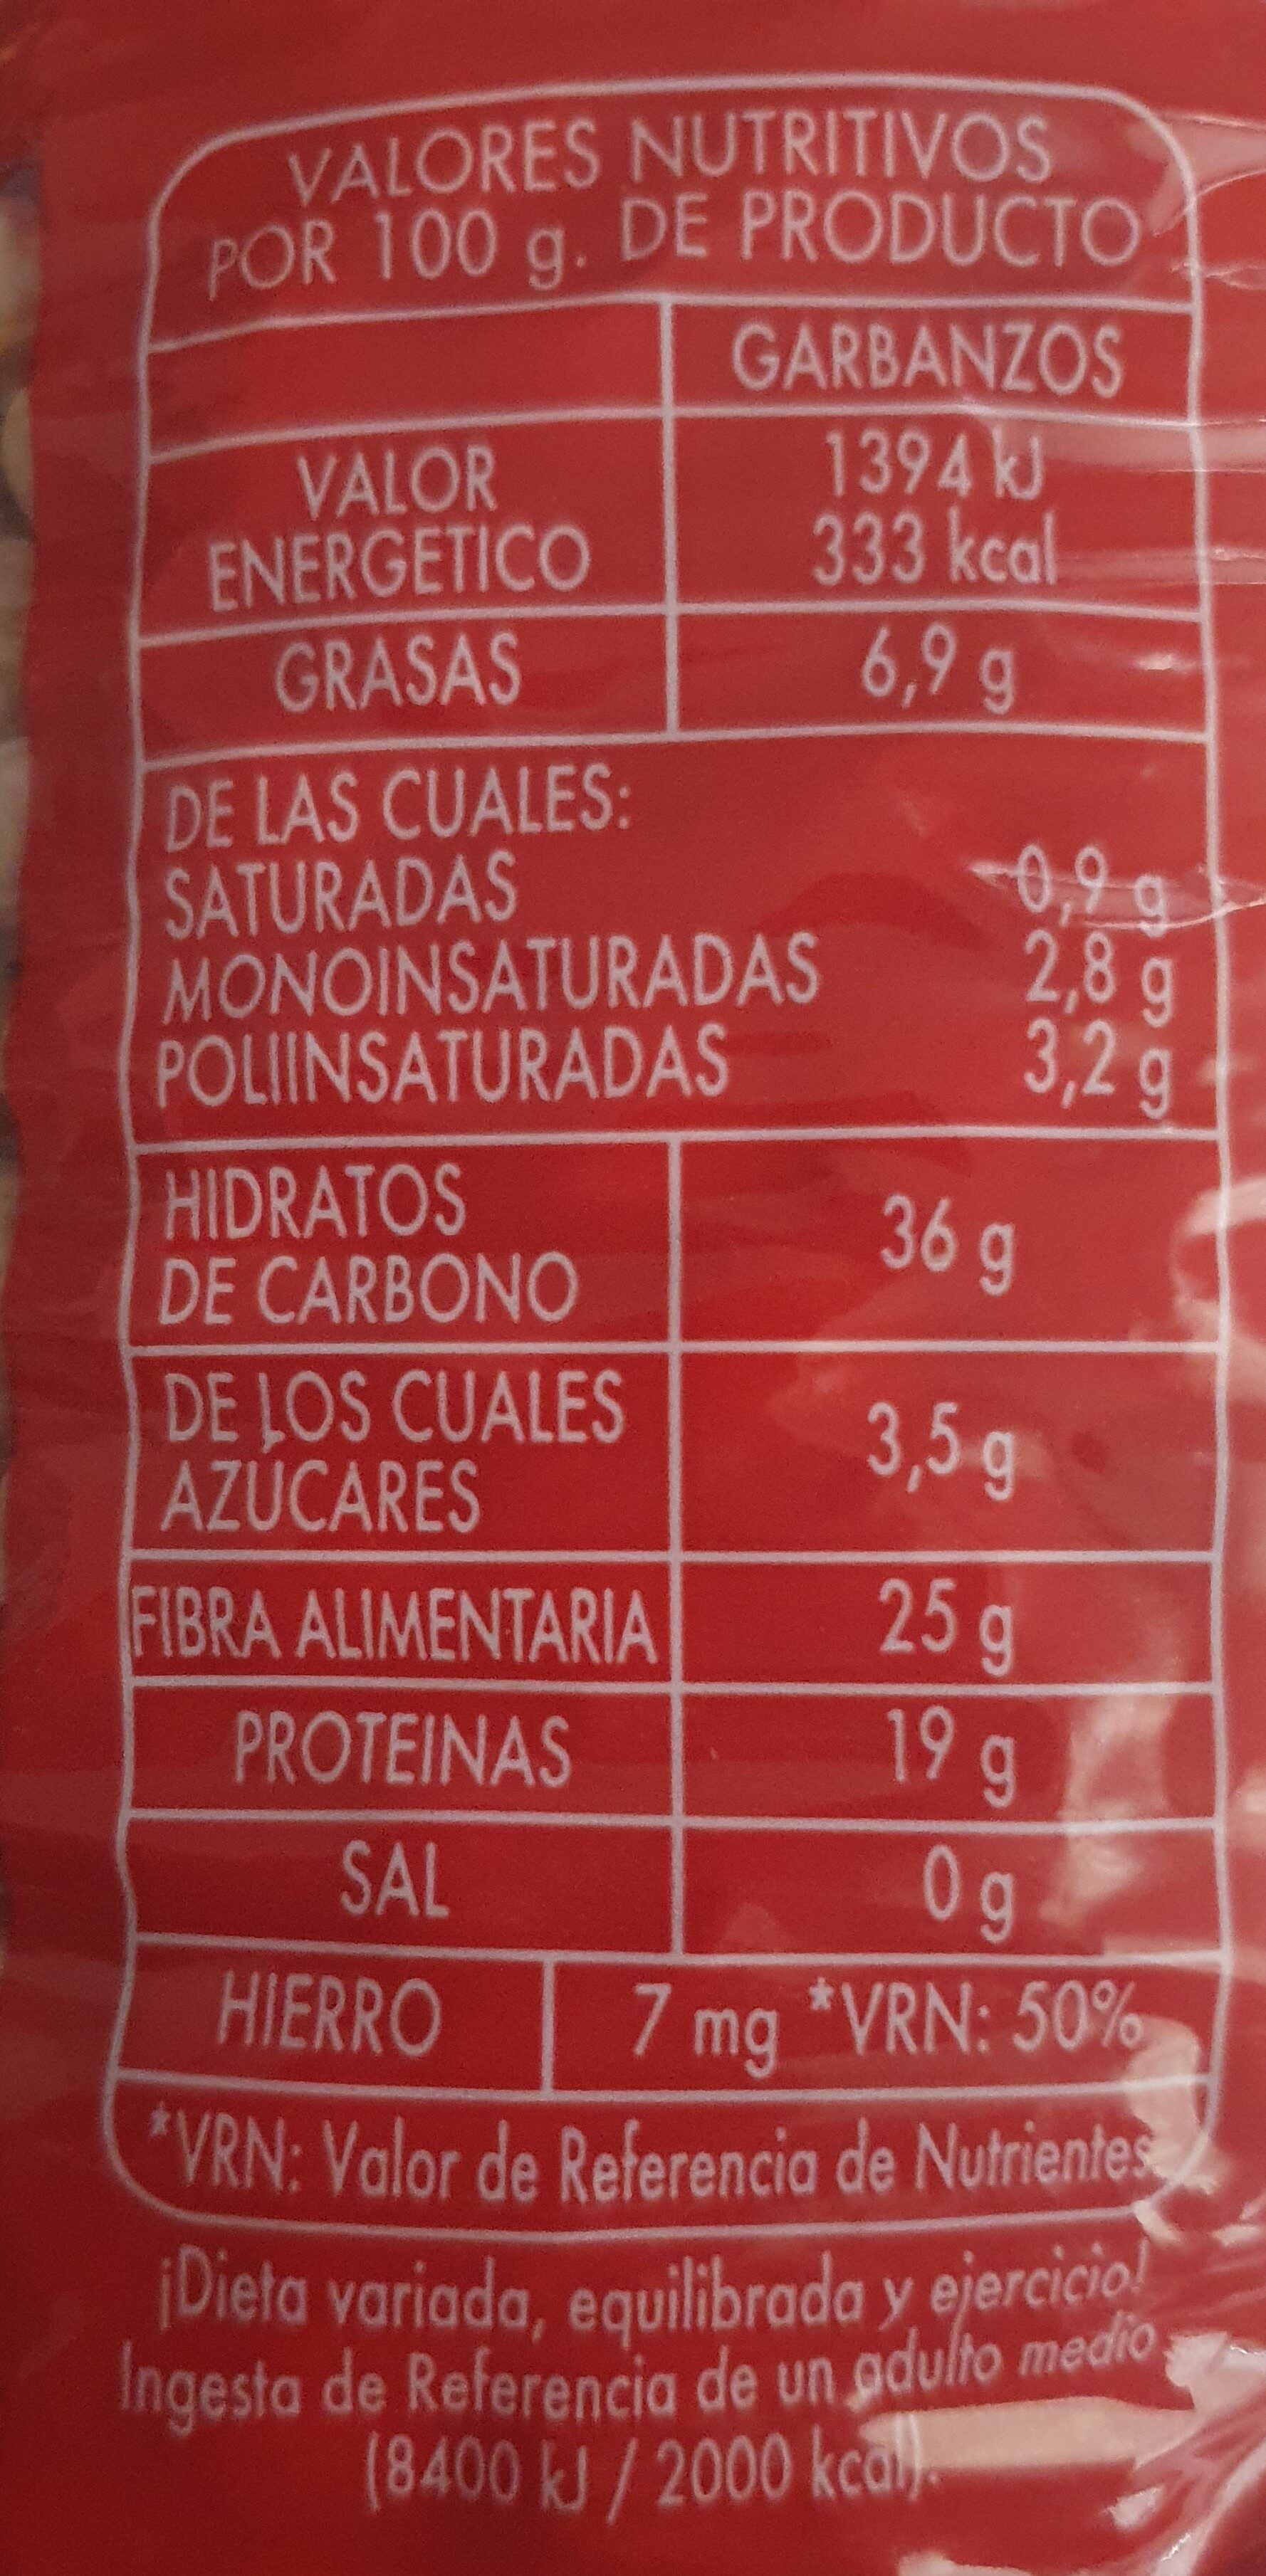 Garbanzo mediano - Nutrition facts - es